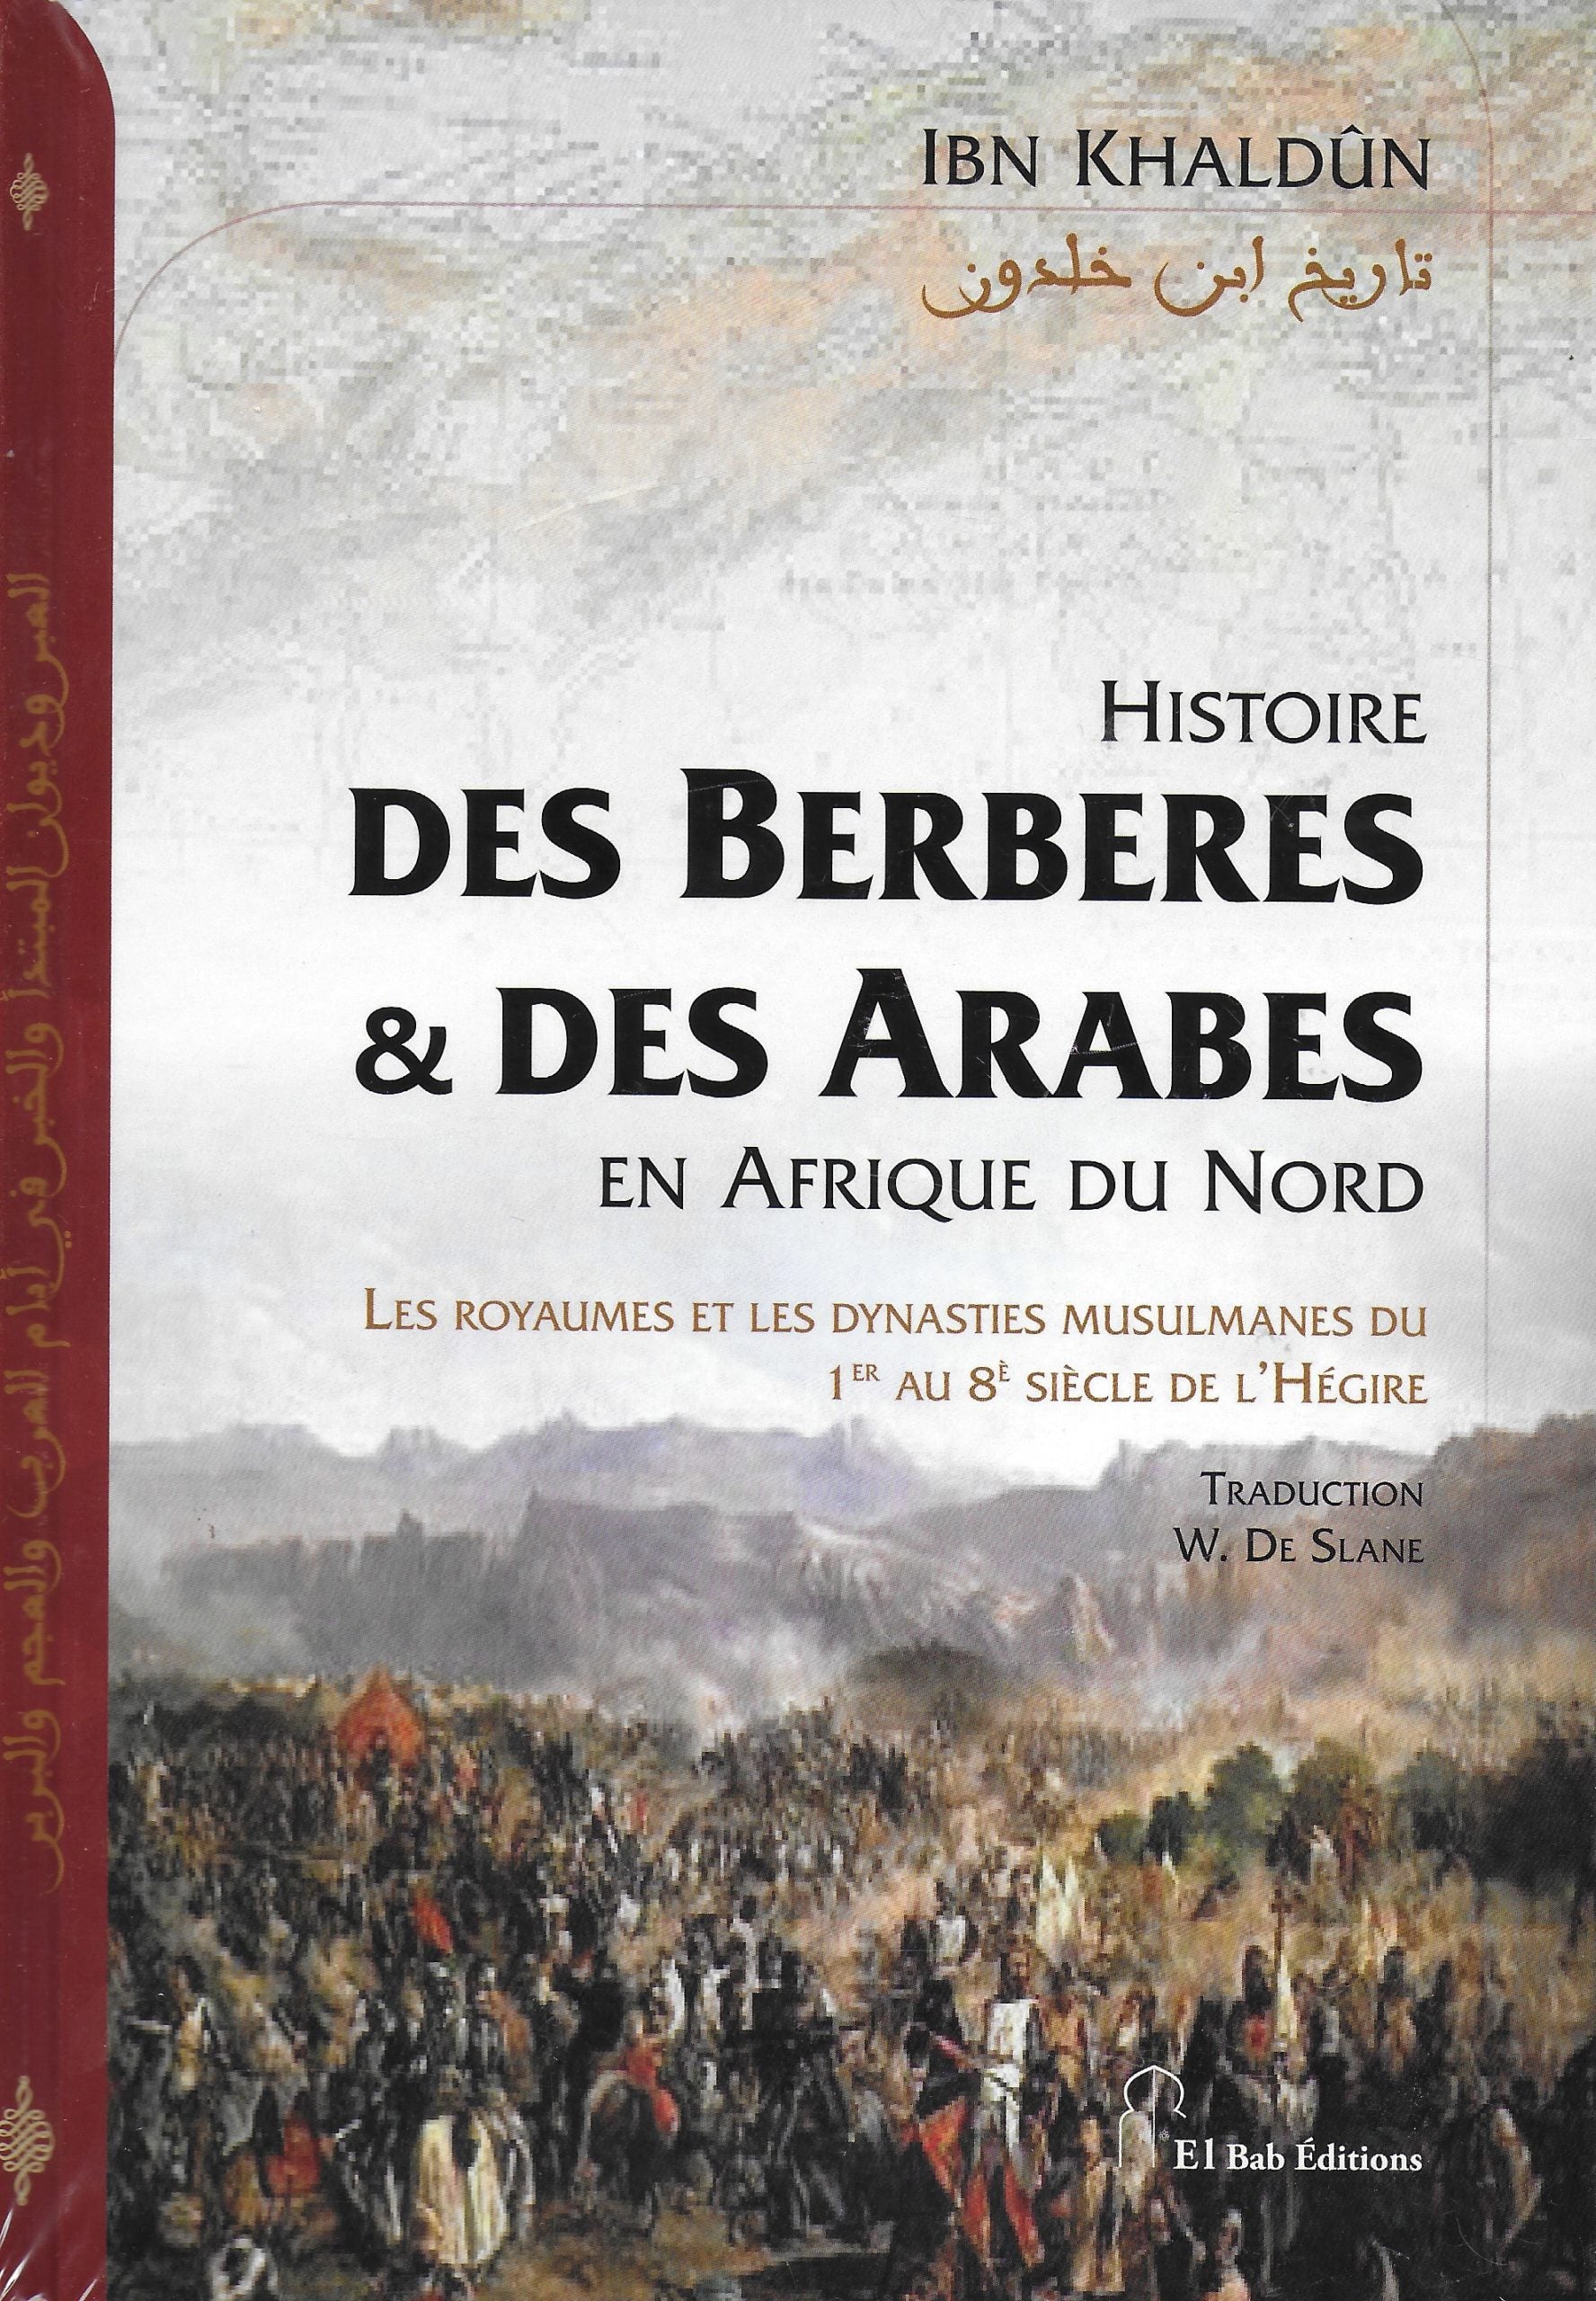 histoire-des-berberes-des-arabes-en-afrique-du-nord-de-ibn-khaldun-couverture-souple